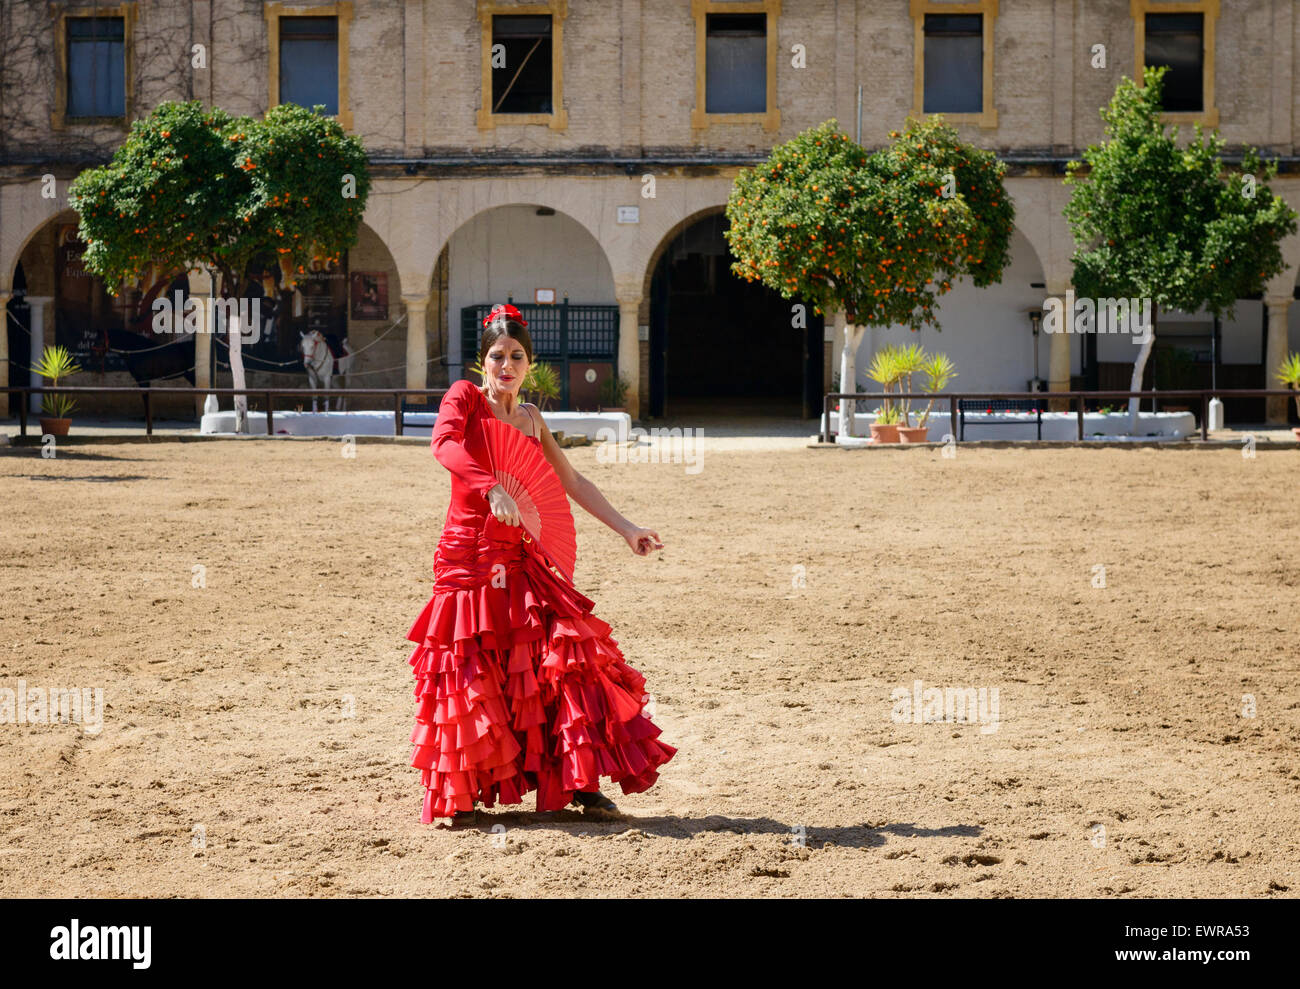 El bailarín de flamenco en establos reales Córdoba Foto de stock